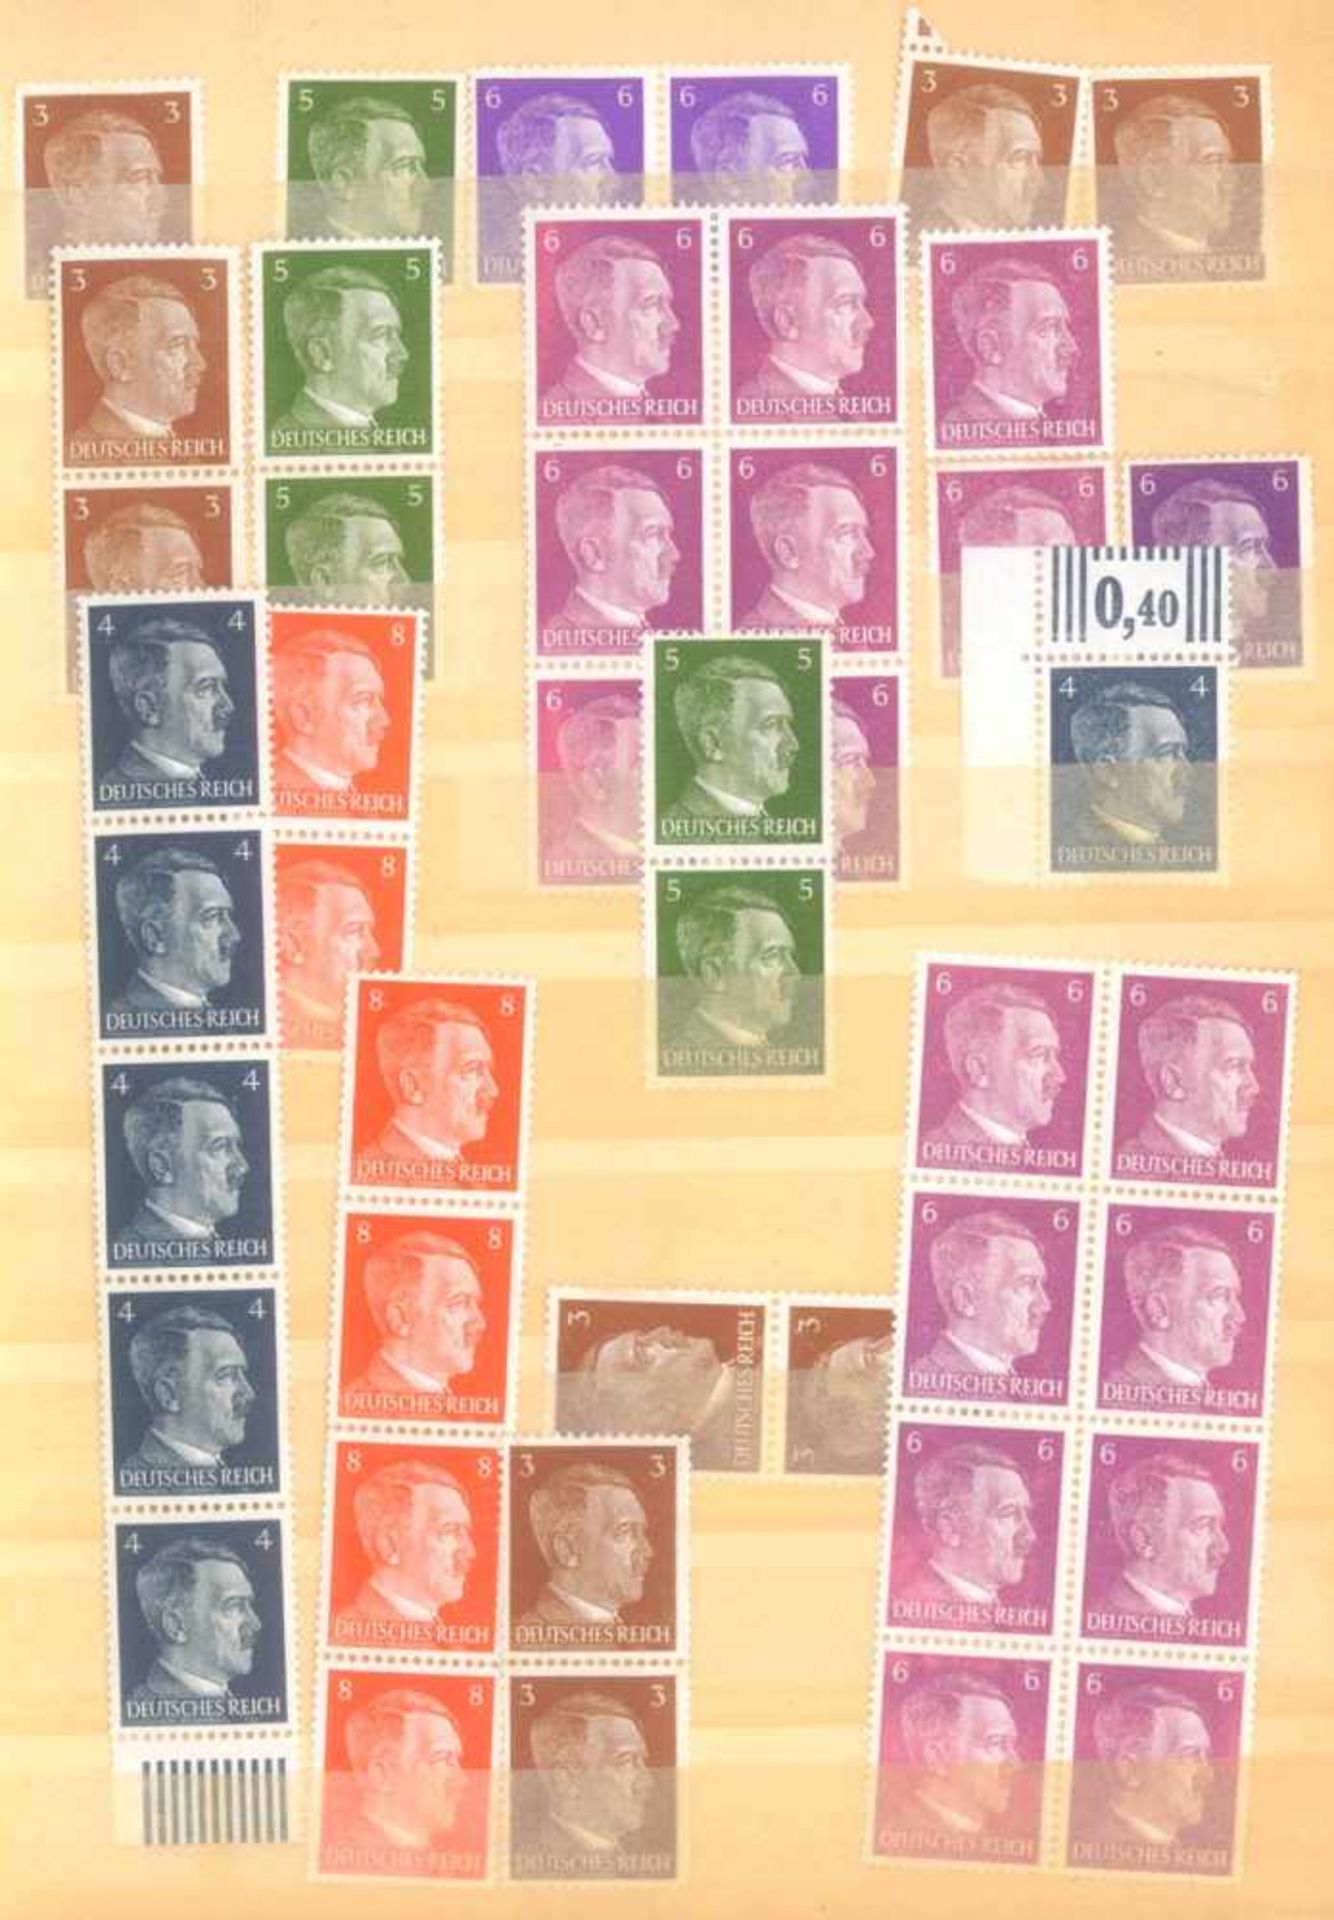 FRANKENTHALER NACHLASSuriger Nachlass mit Briefmarken und Belegen. Dabei DeutschesReich, altes - Bild 17 aus 46